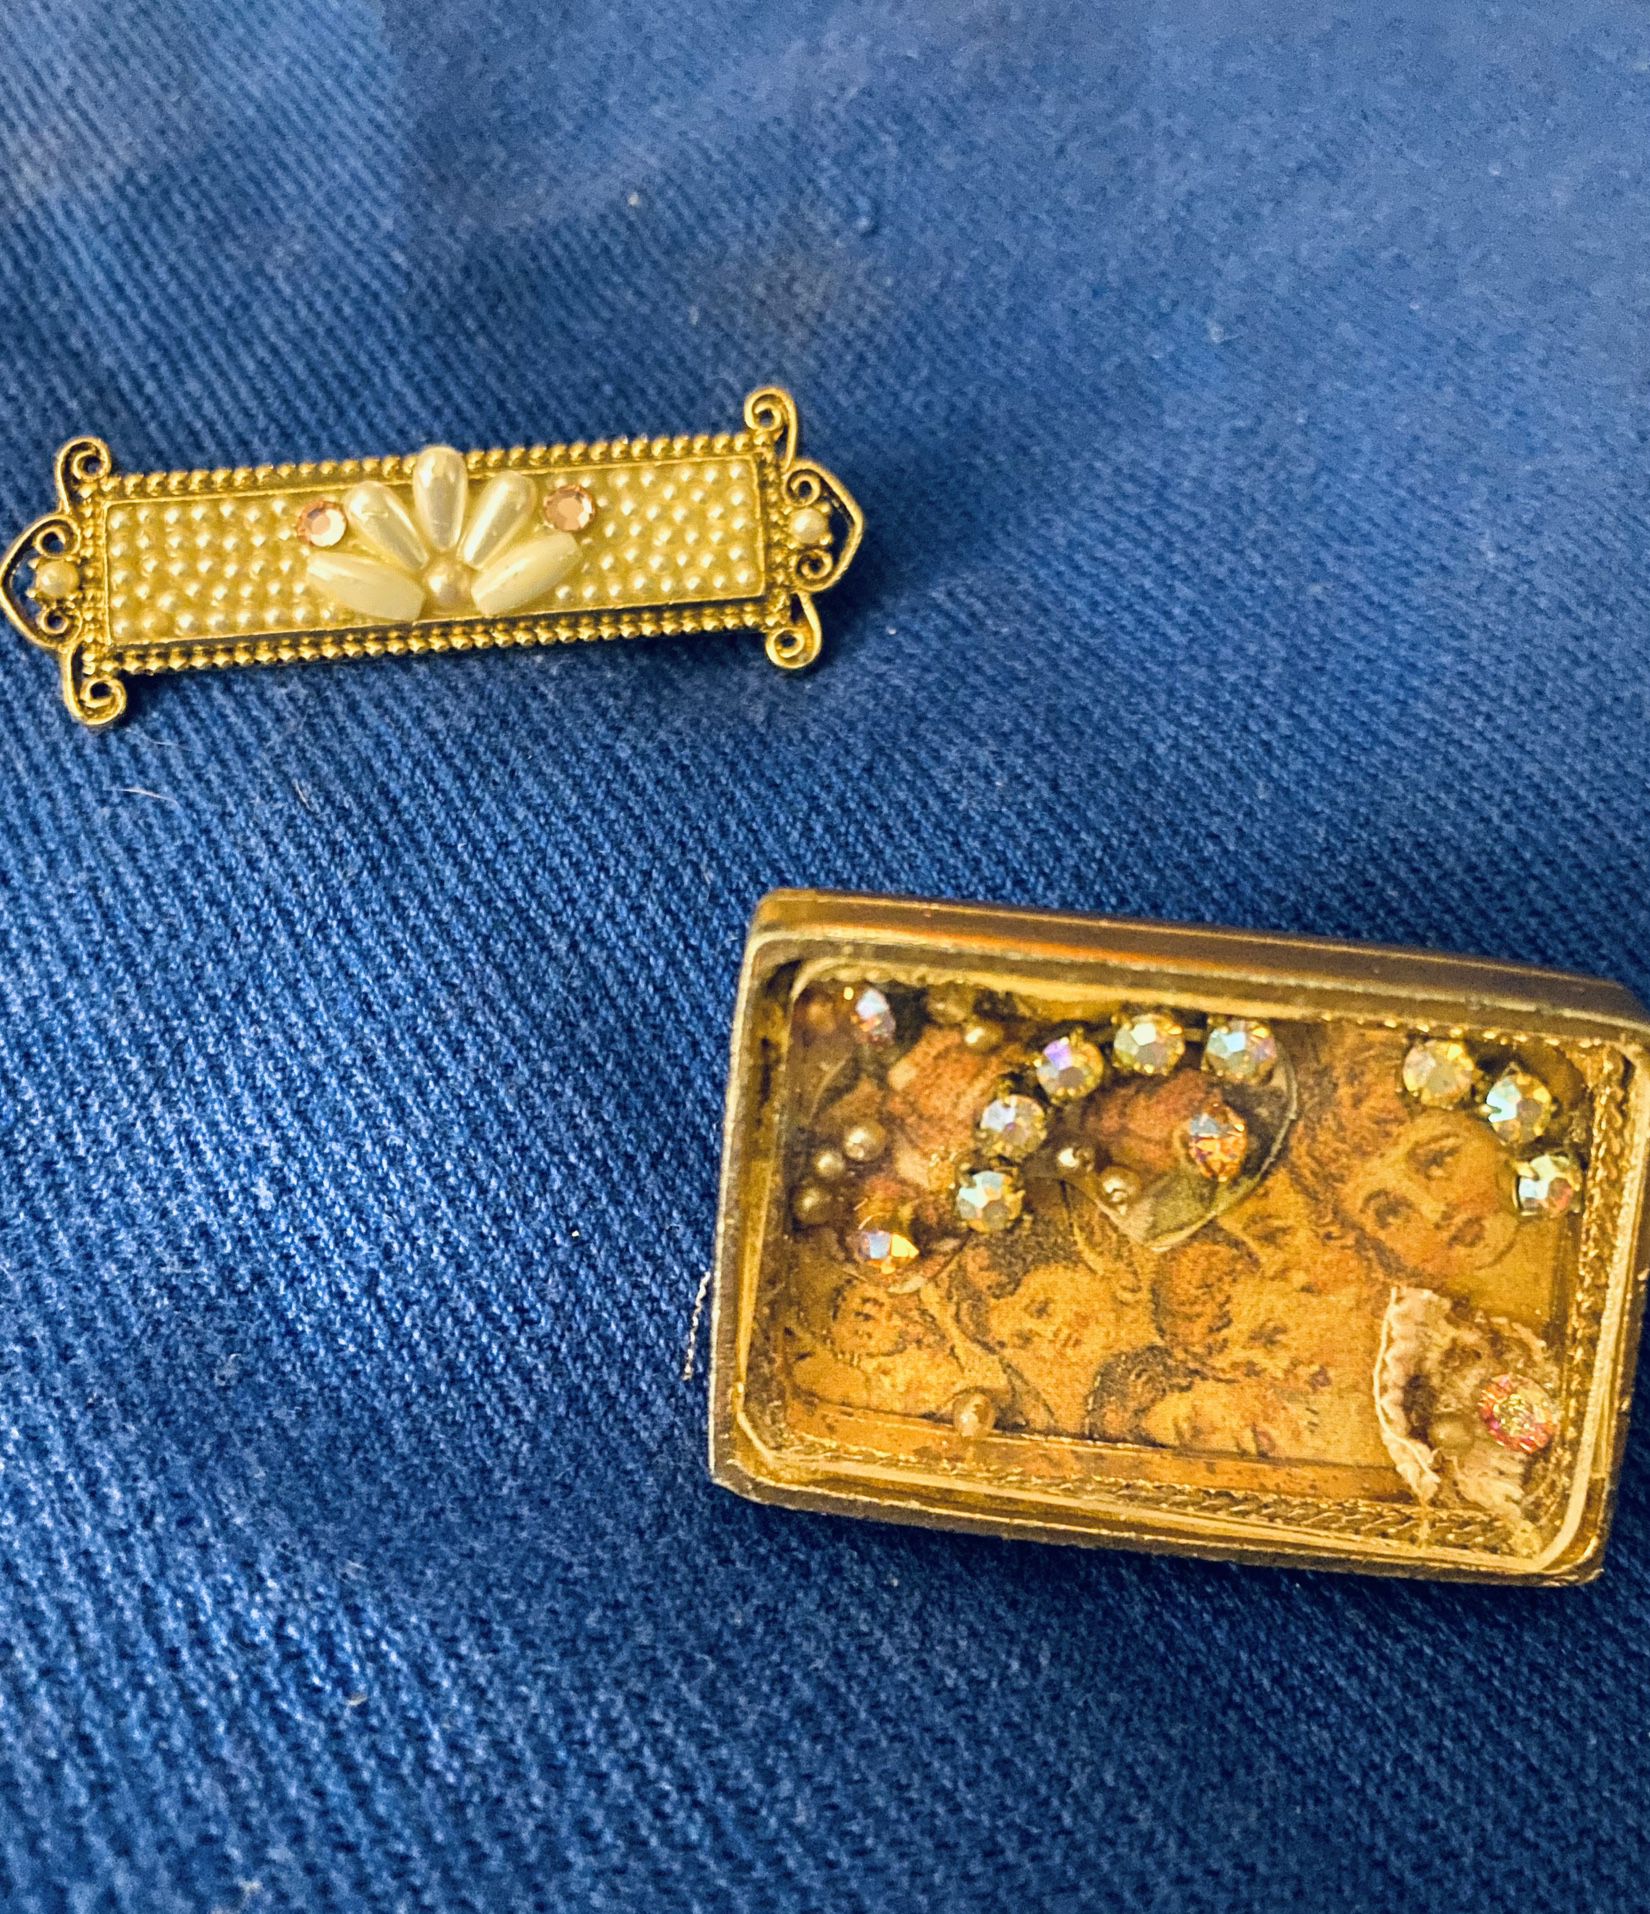 2 Art Deco Antique-Style Pins